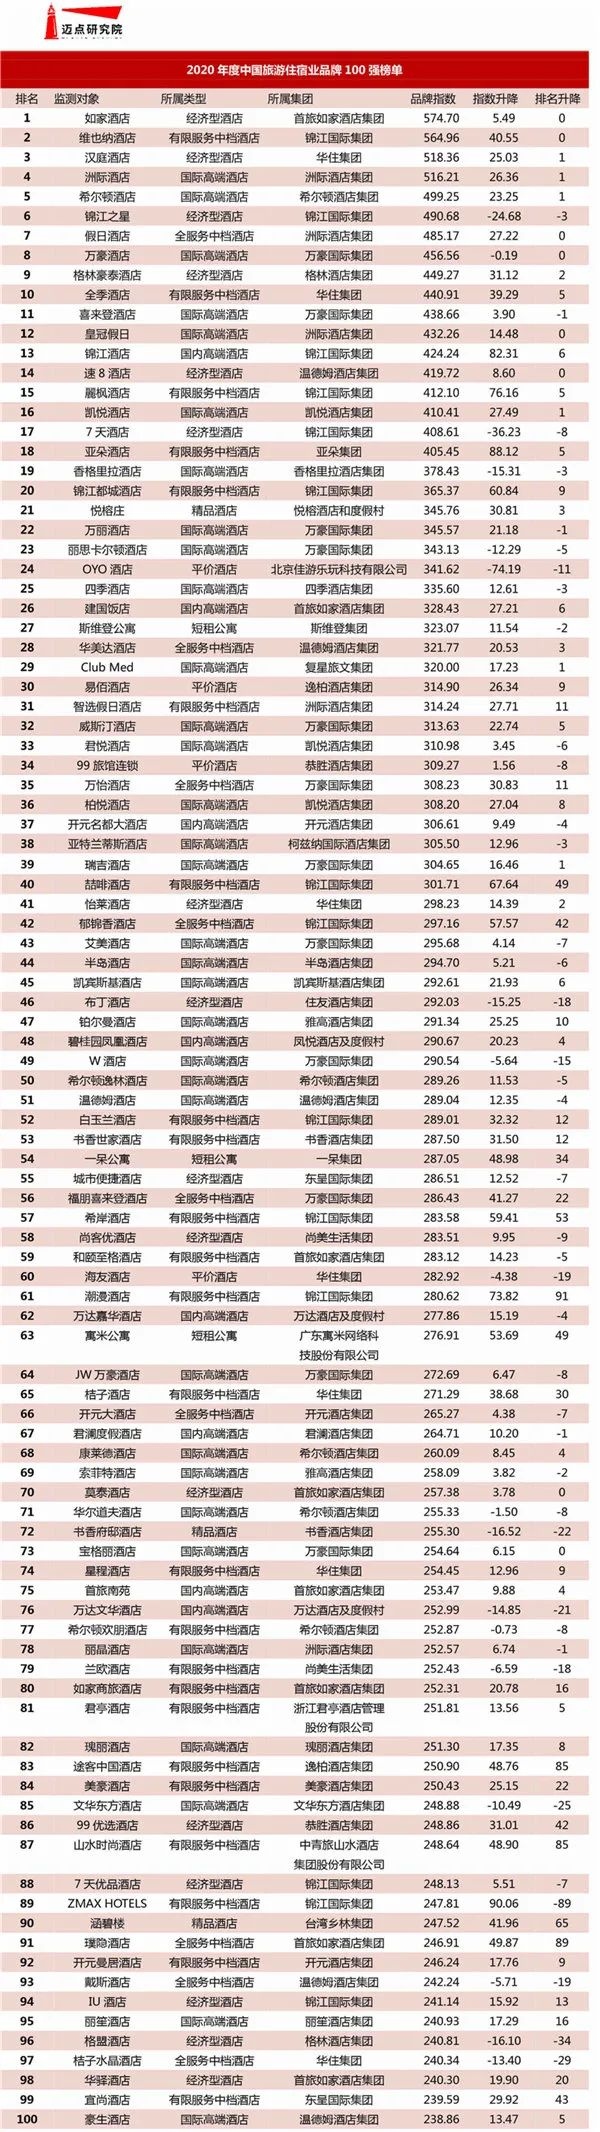 一呆集团荣获2020年度中国旅游住宿业品牌100强榜第54名